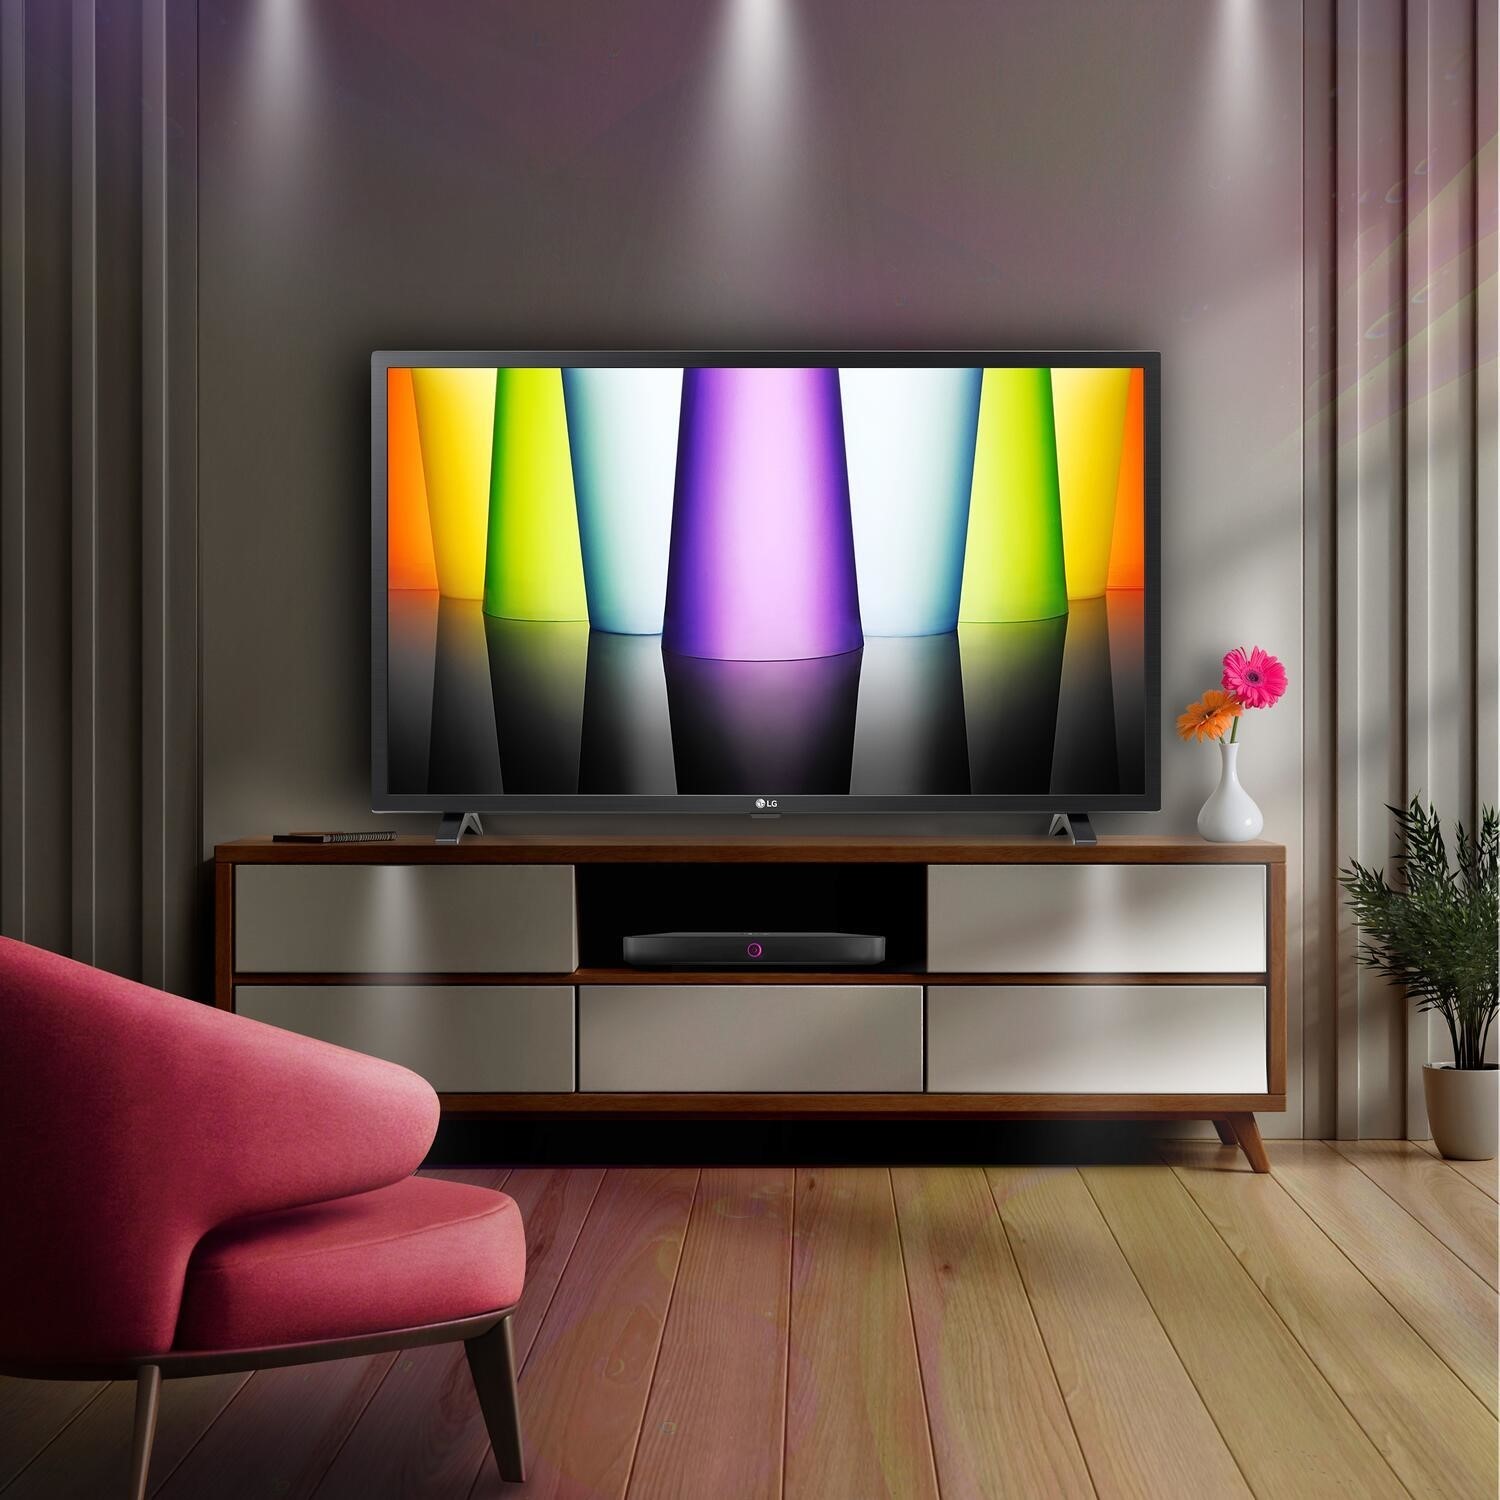 LG LQ63 32 Inch LED Full HD Smart TV 32LQ630B6LA | Appliances Direct